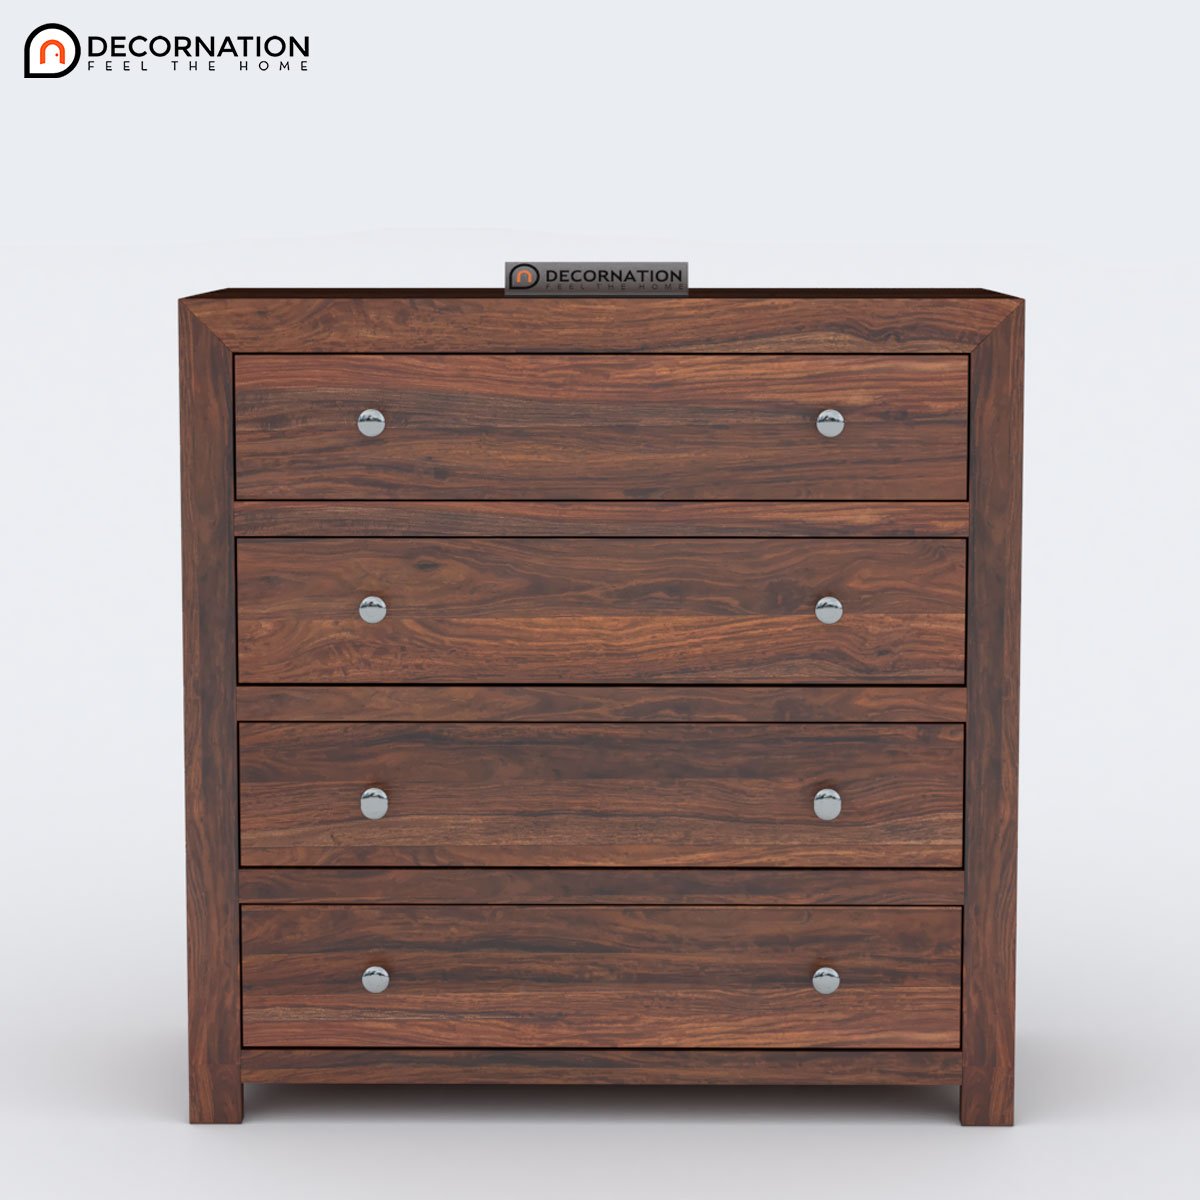 Caesar Wooden Drawer Storage Cabinet - Brown - Decornation